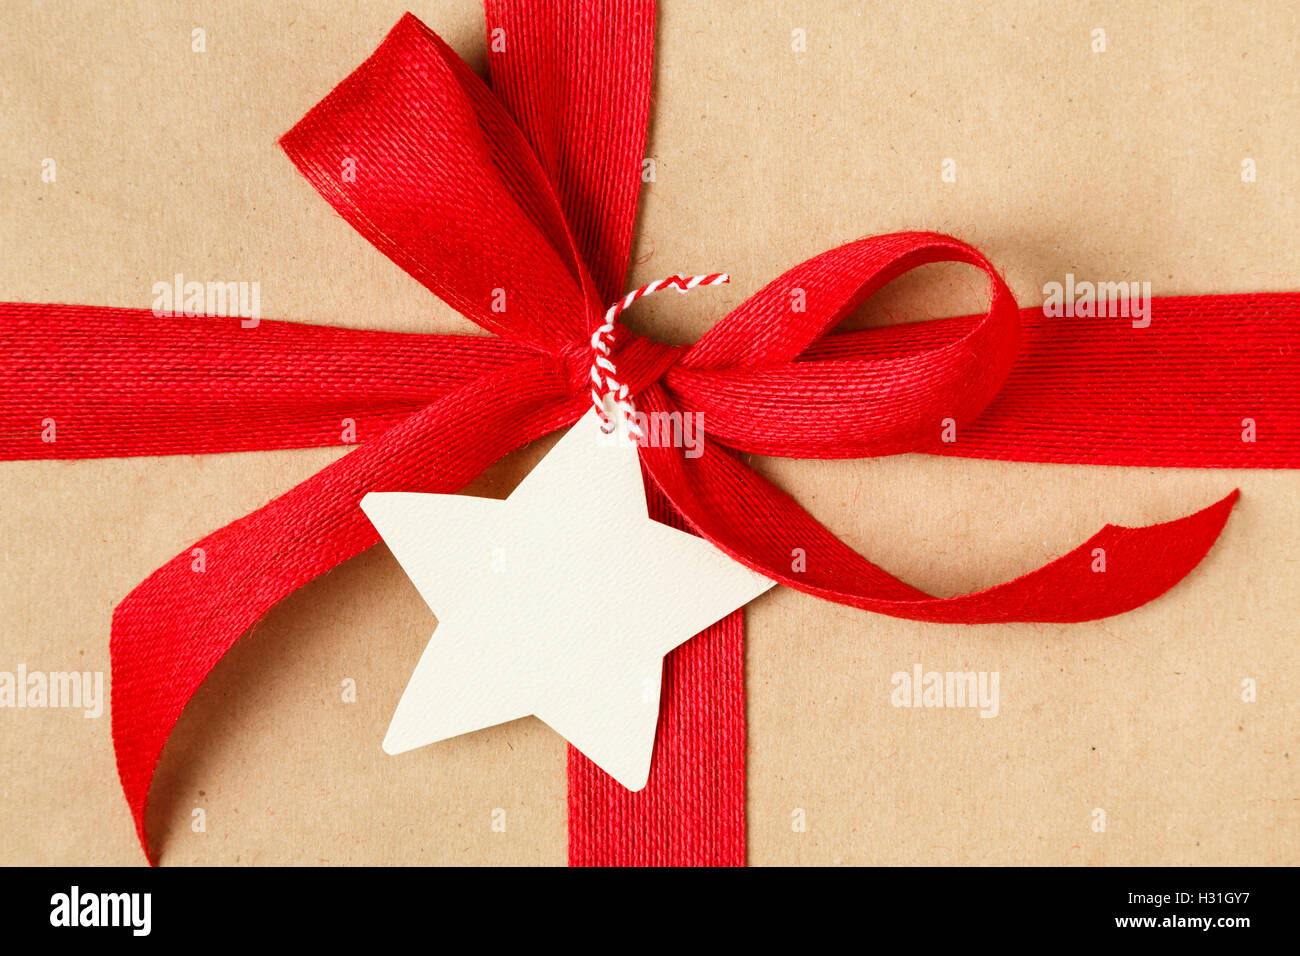 Weihnachtsgeschenk mit roter Schleife und leere Geschenkanhänger. Einfaches Recycling Geschenkpapier und natürliche Jute-Band. Stockfoto